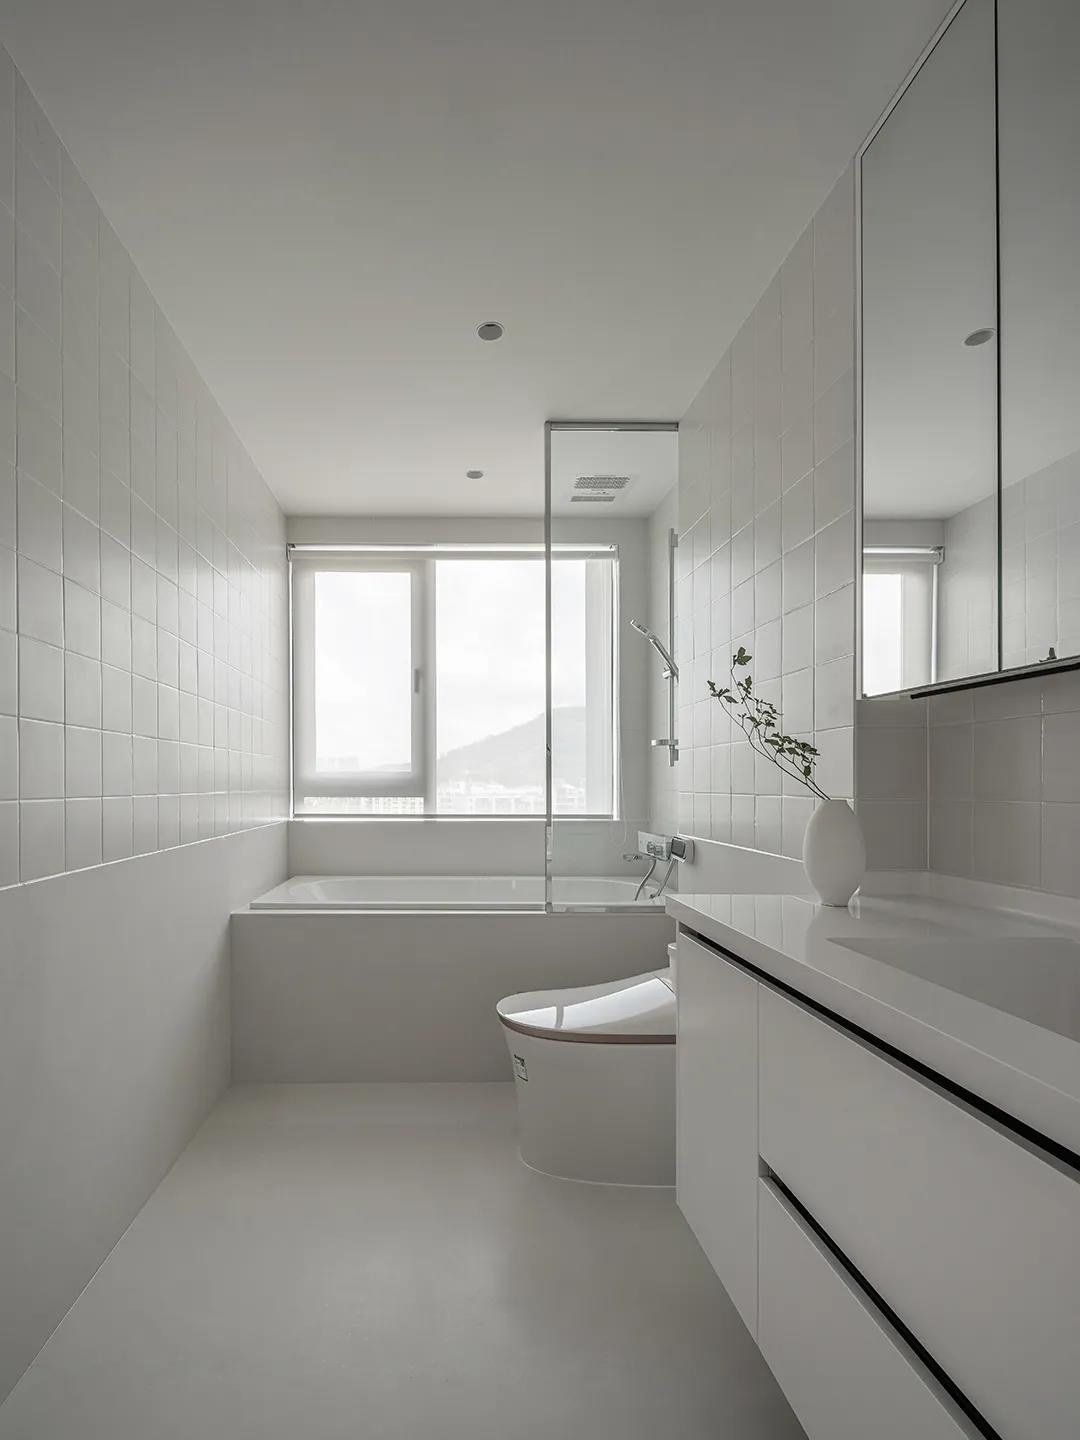 卫浴空间以白色调为主题，视觉效果明亮简洁，浴缸一侧采用玻璃进行干湿分离。